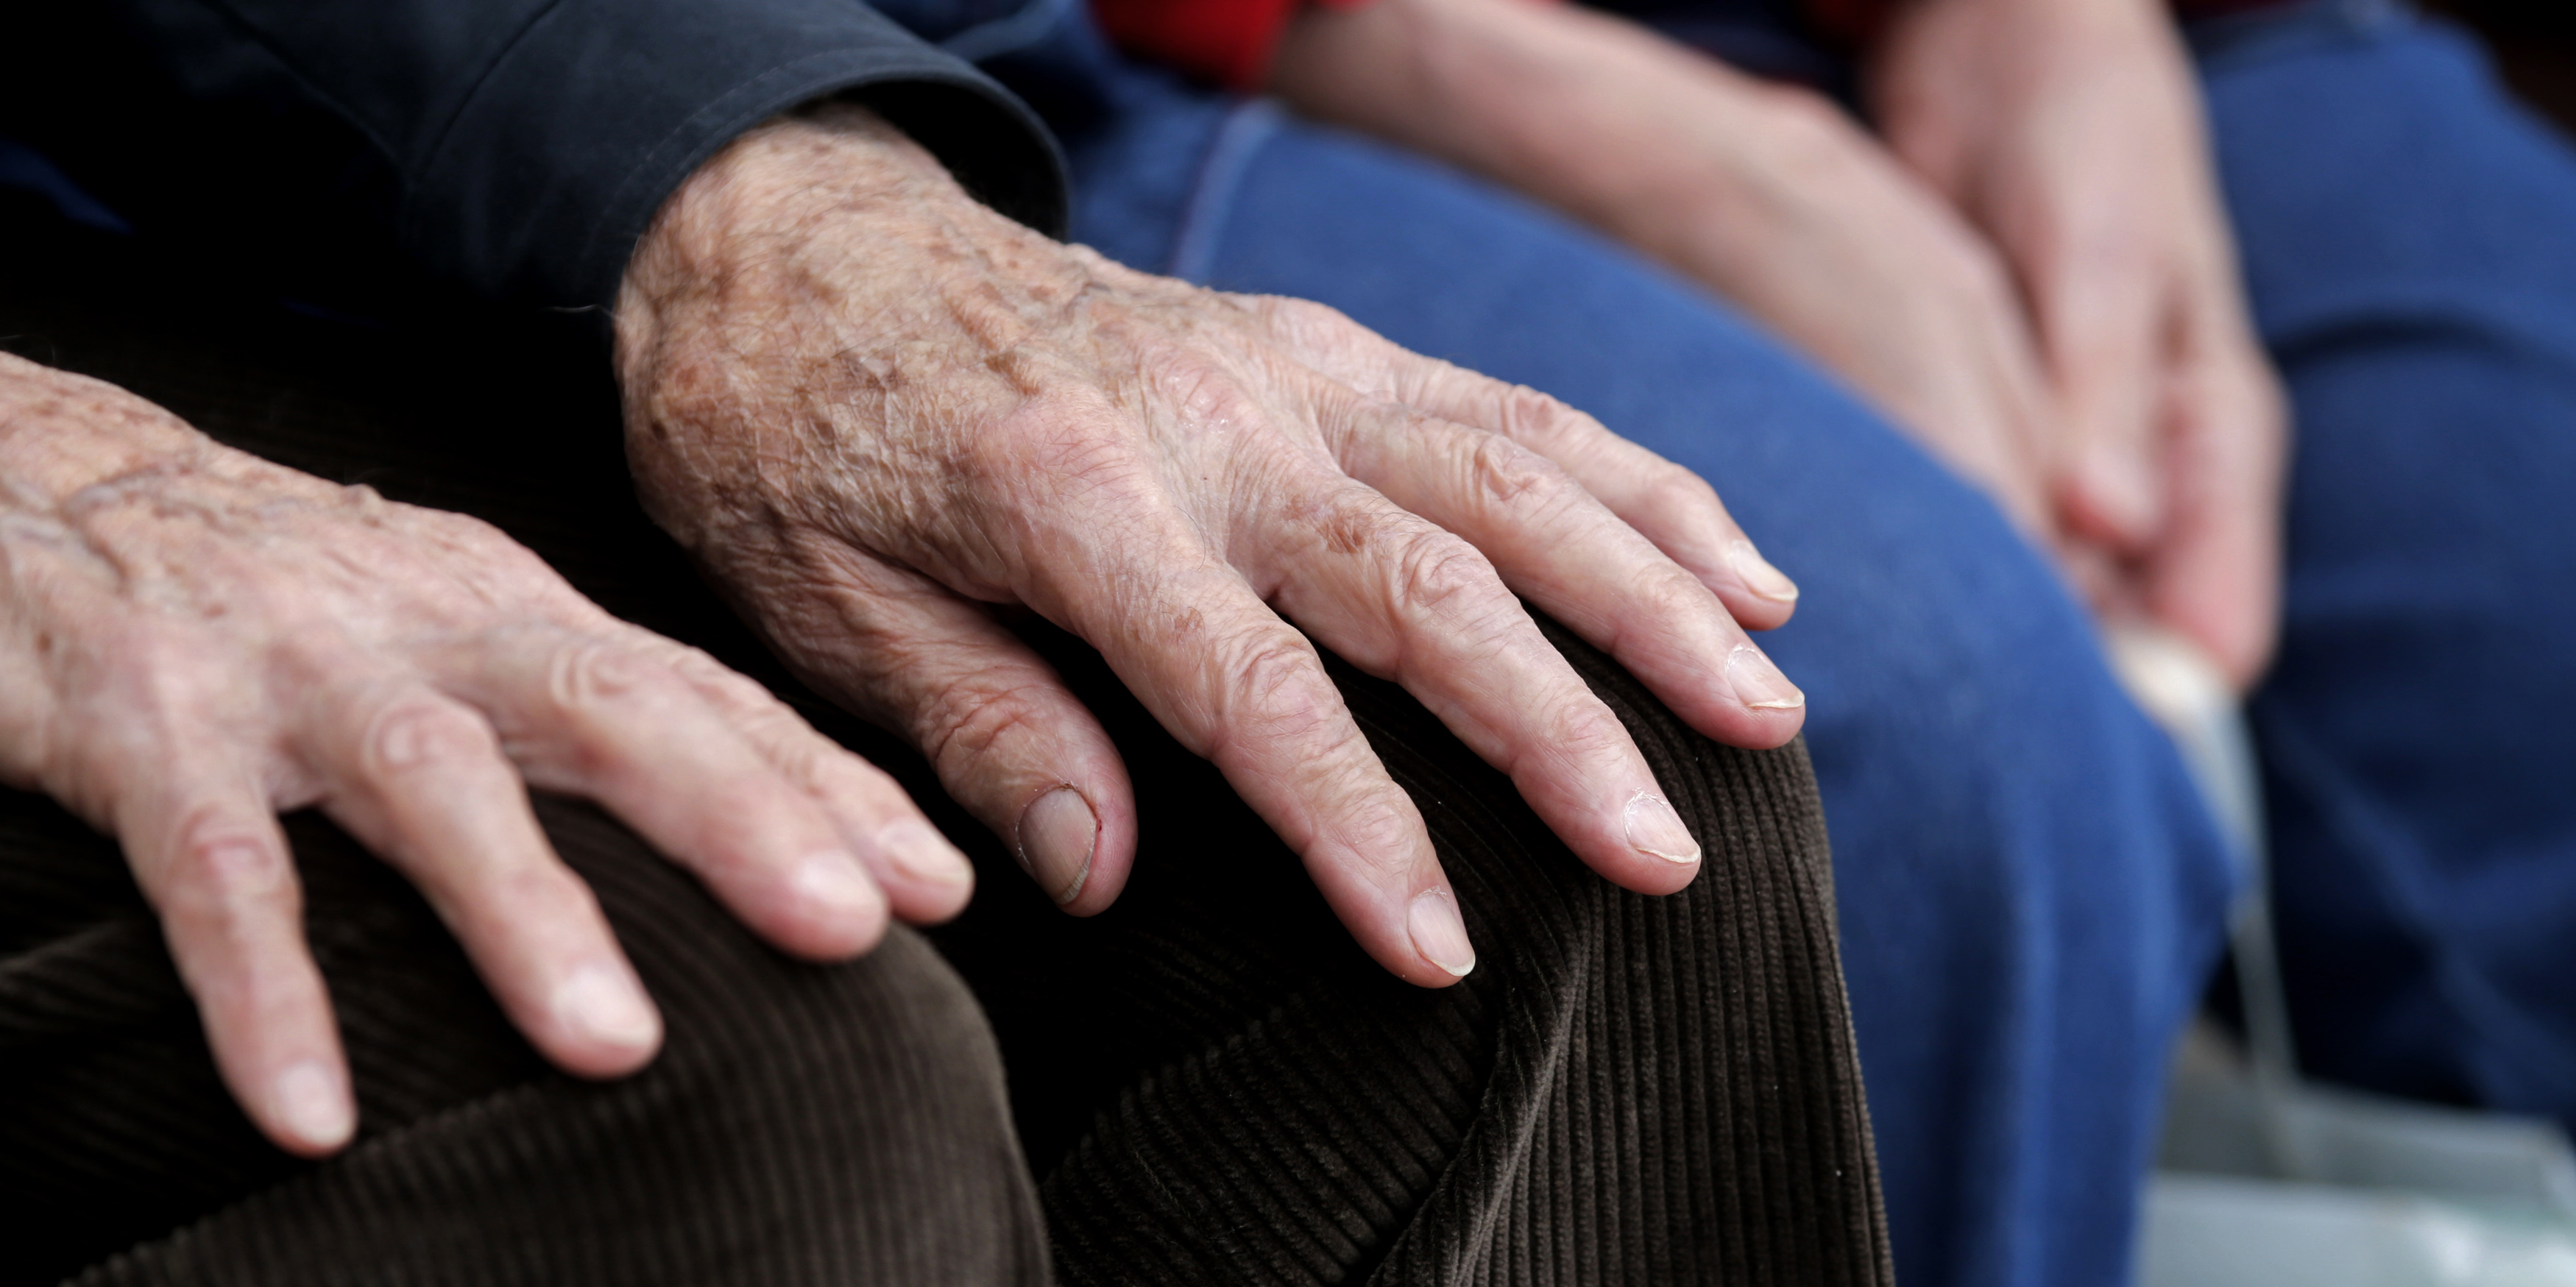 Retraites : le report de l'âge légal fait augmenter le chômage des seniors, selon l'Unédic